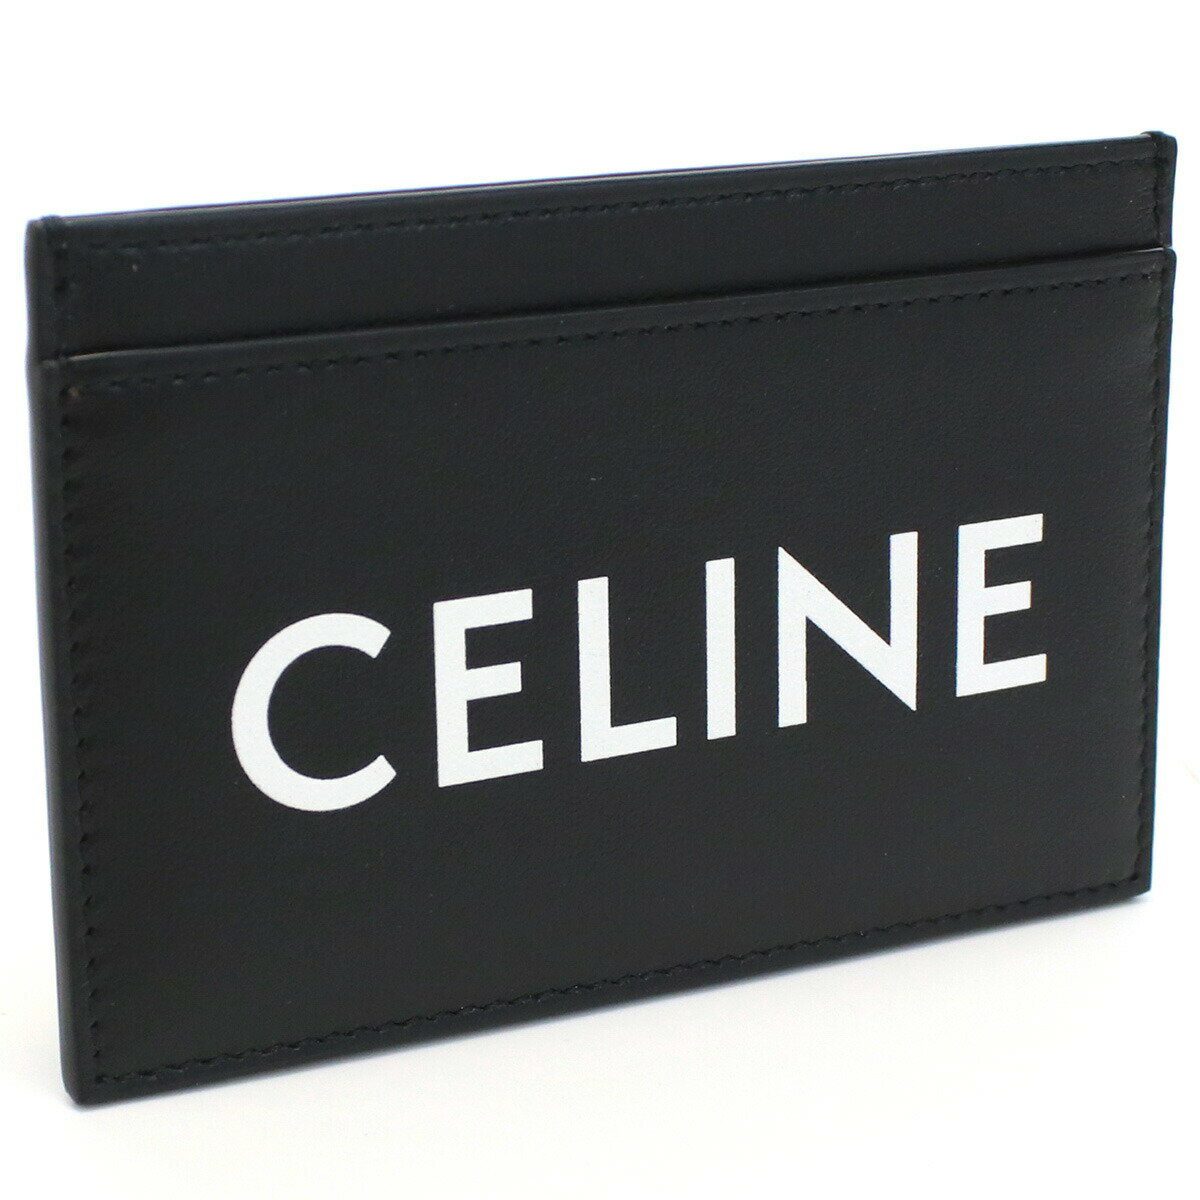 セリーヌ 名刺入れ セリーヌ CELINE 10B70 カードケース BLACK ブラック メンズ bh